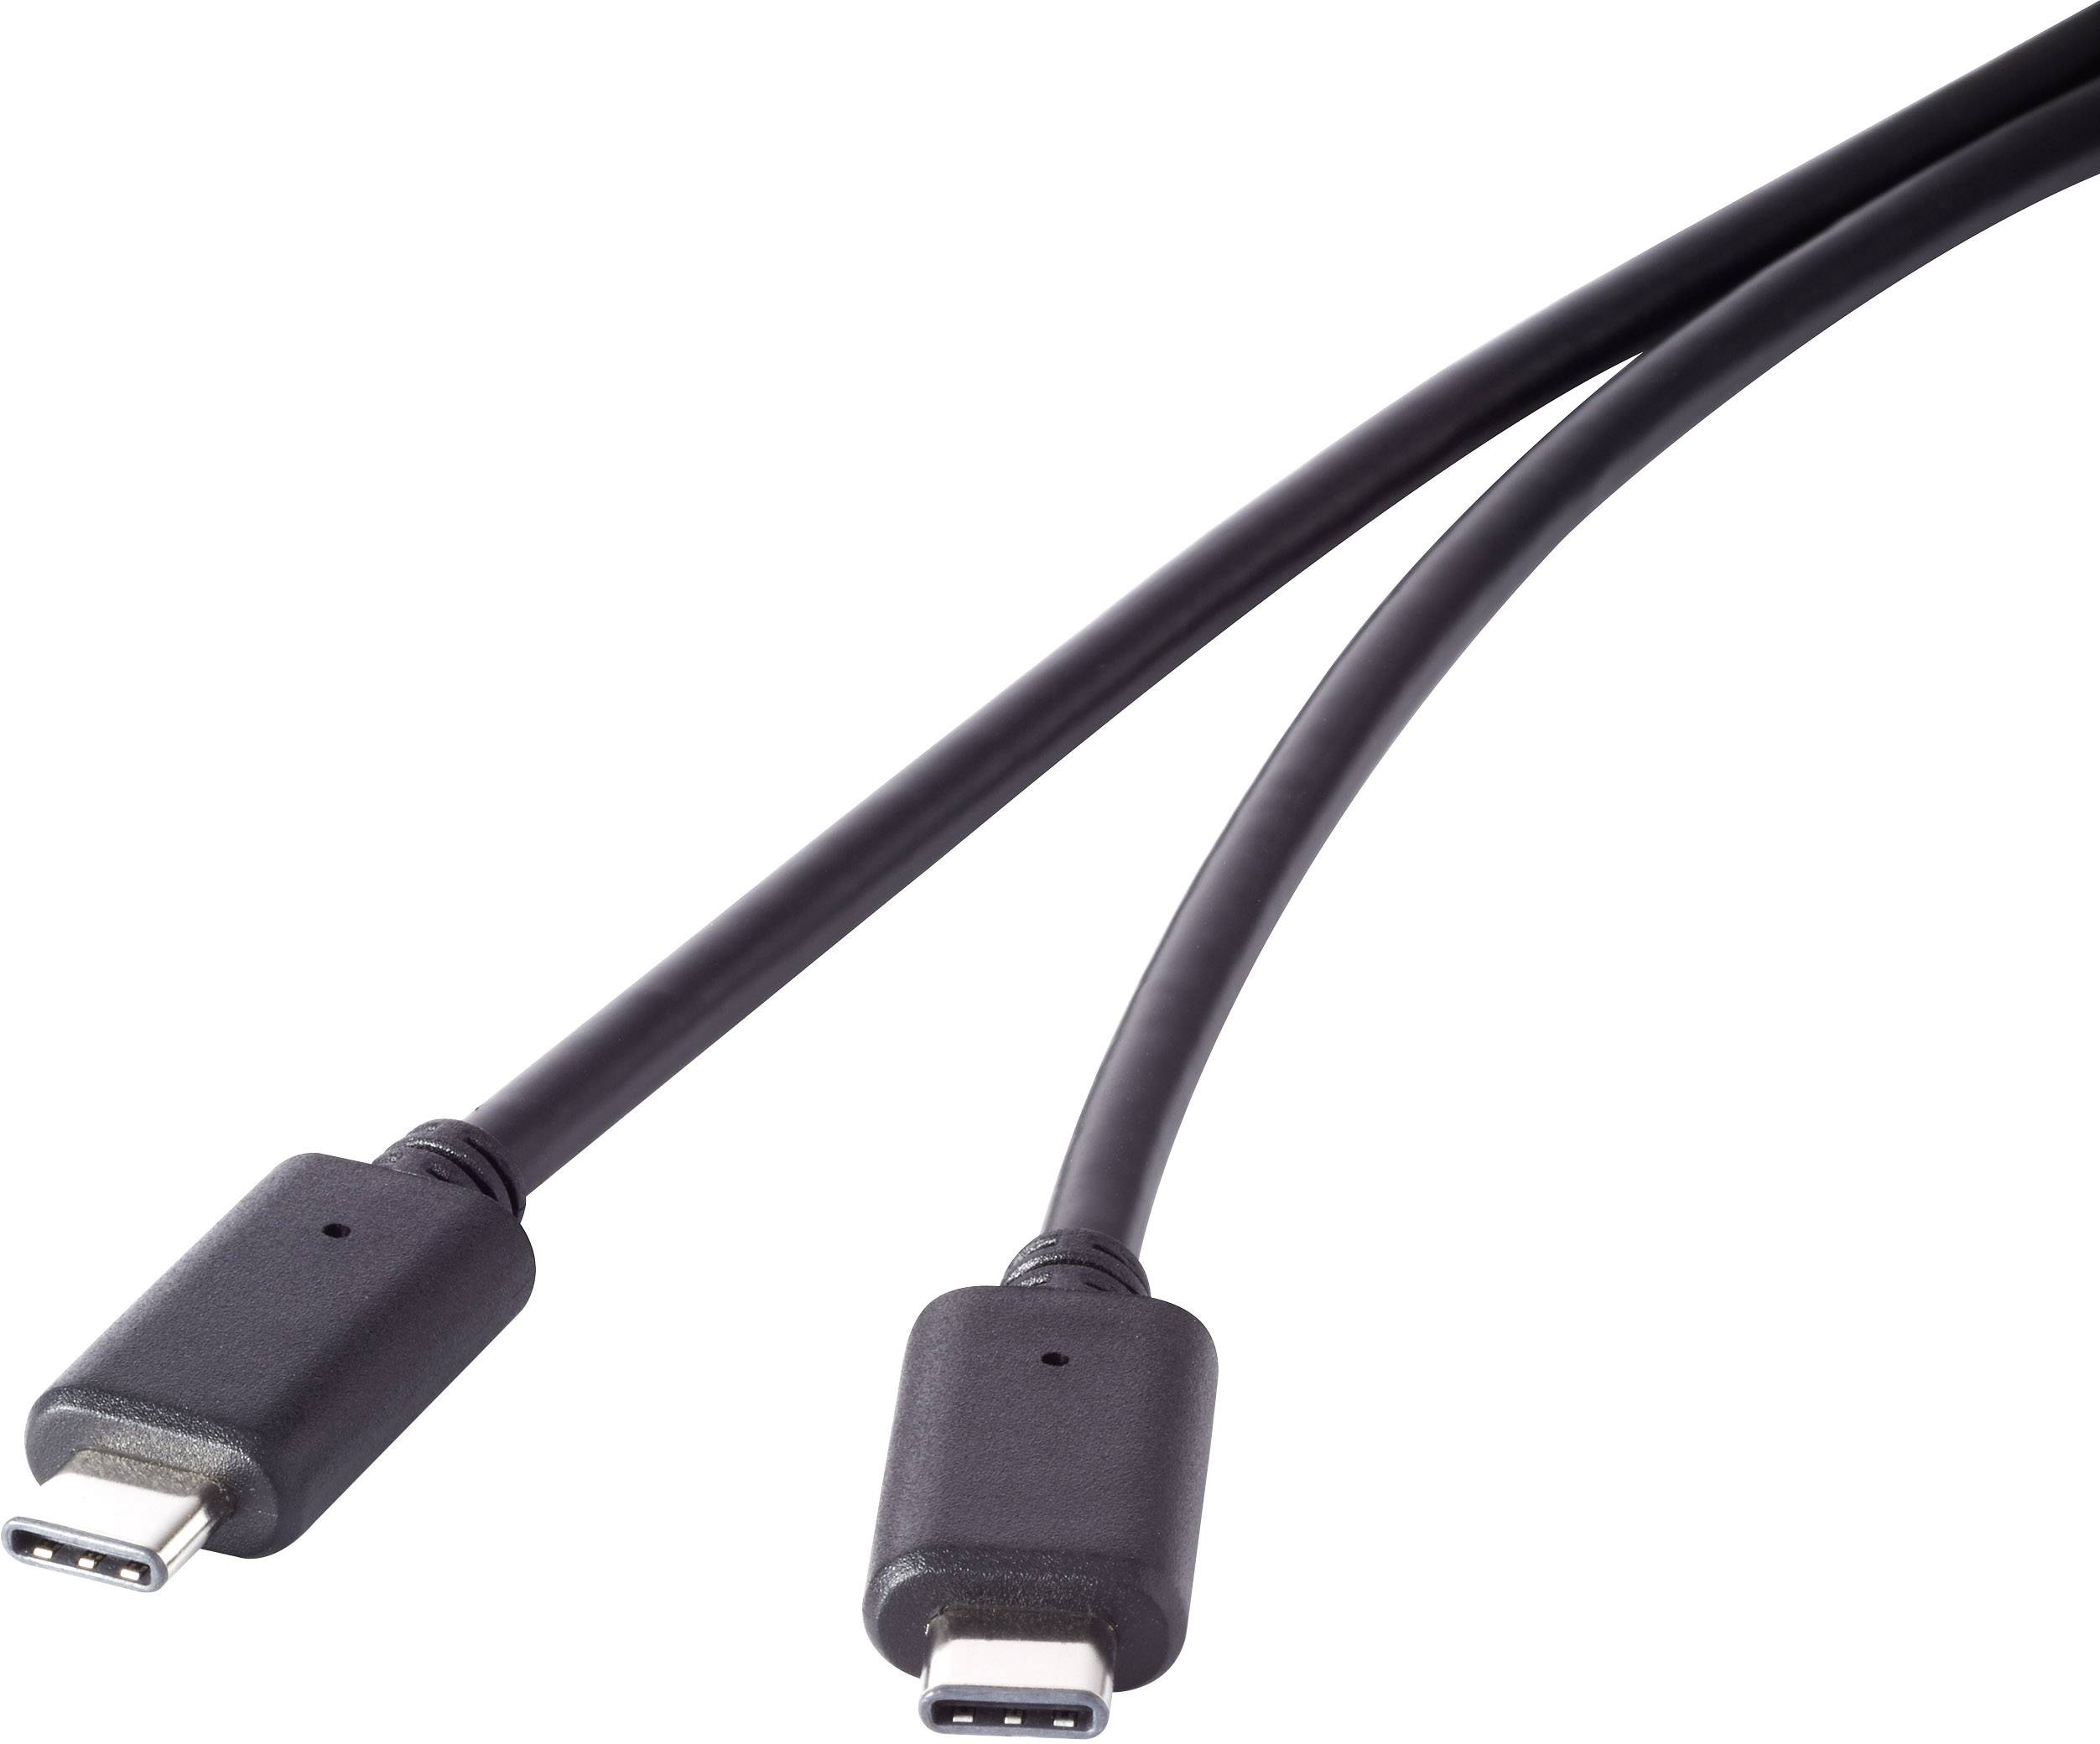 CONRAD USB 3.1 Gen 2 Kabel [1x USB-C? Stecker - 1x USB-C? Stecker] 1.5 m Schwarz vergoldete Steckkon